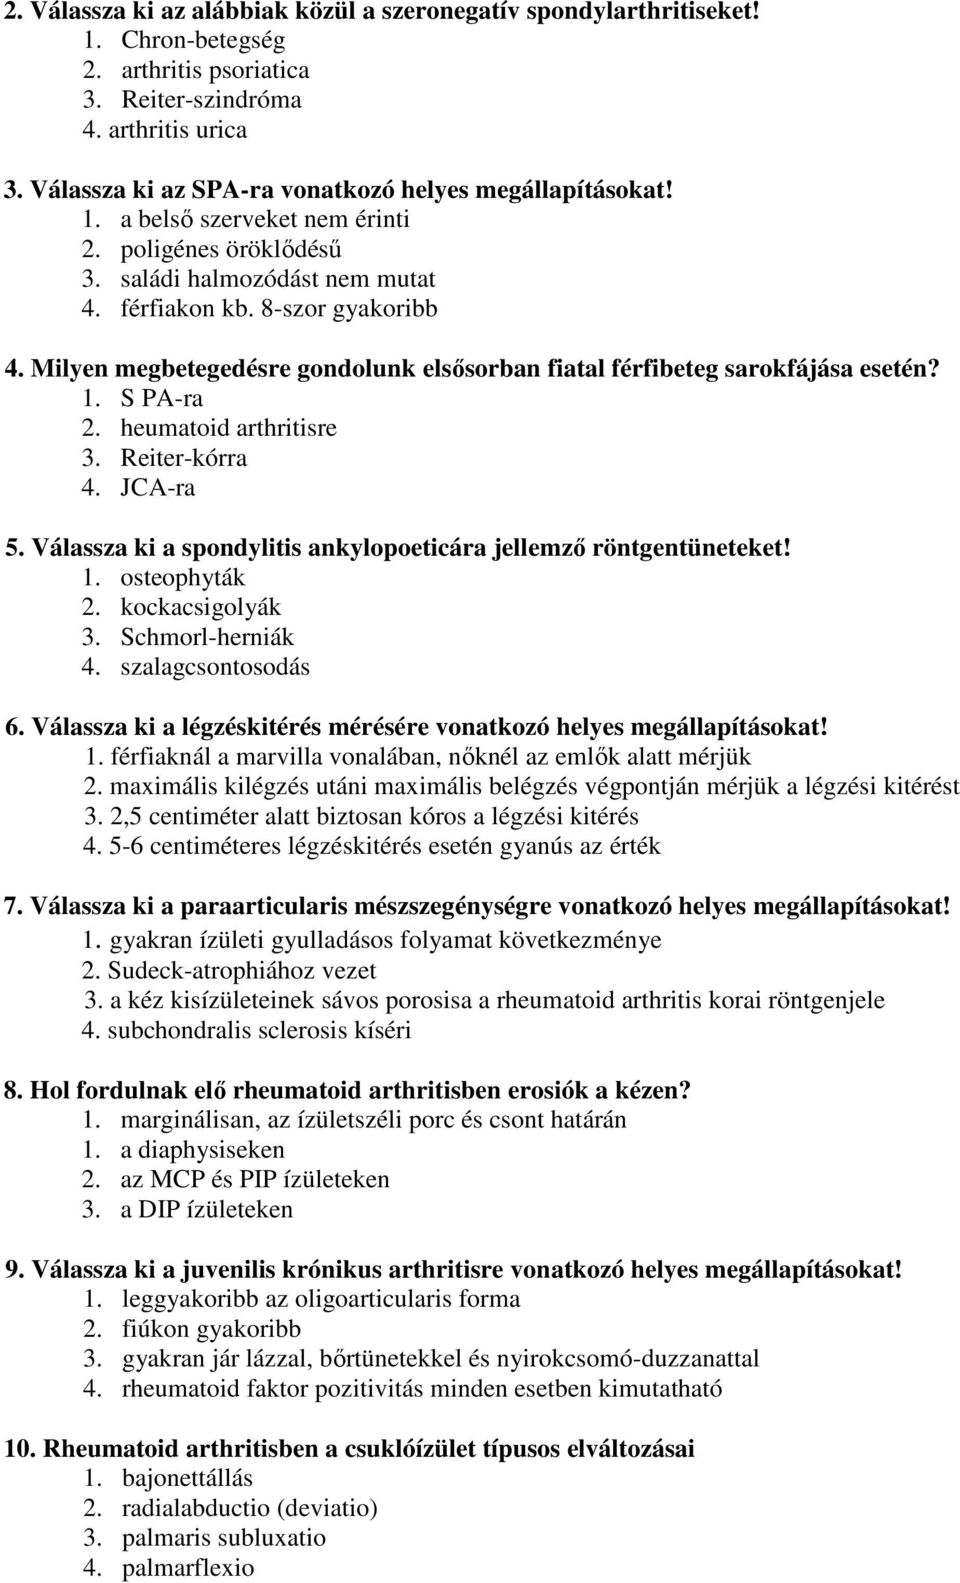 ízületi rendellenességek mértéke rheumatoid arthritisben)